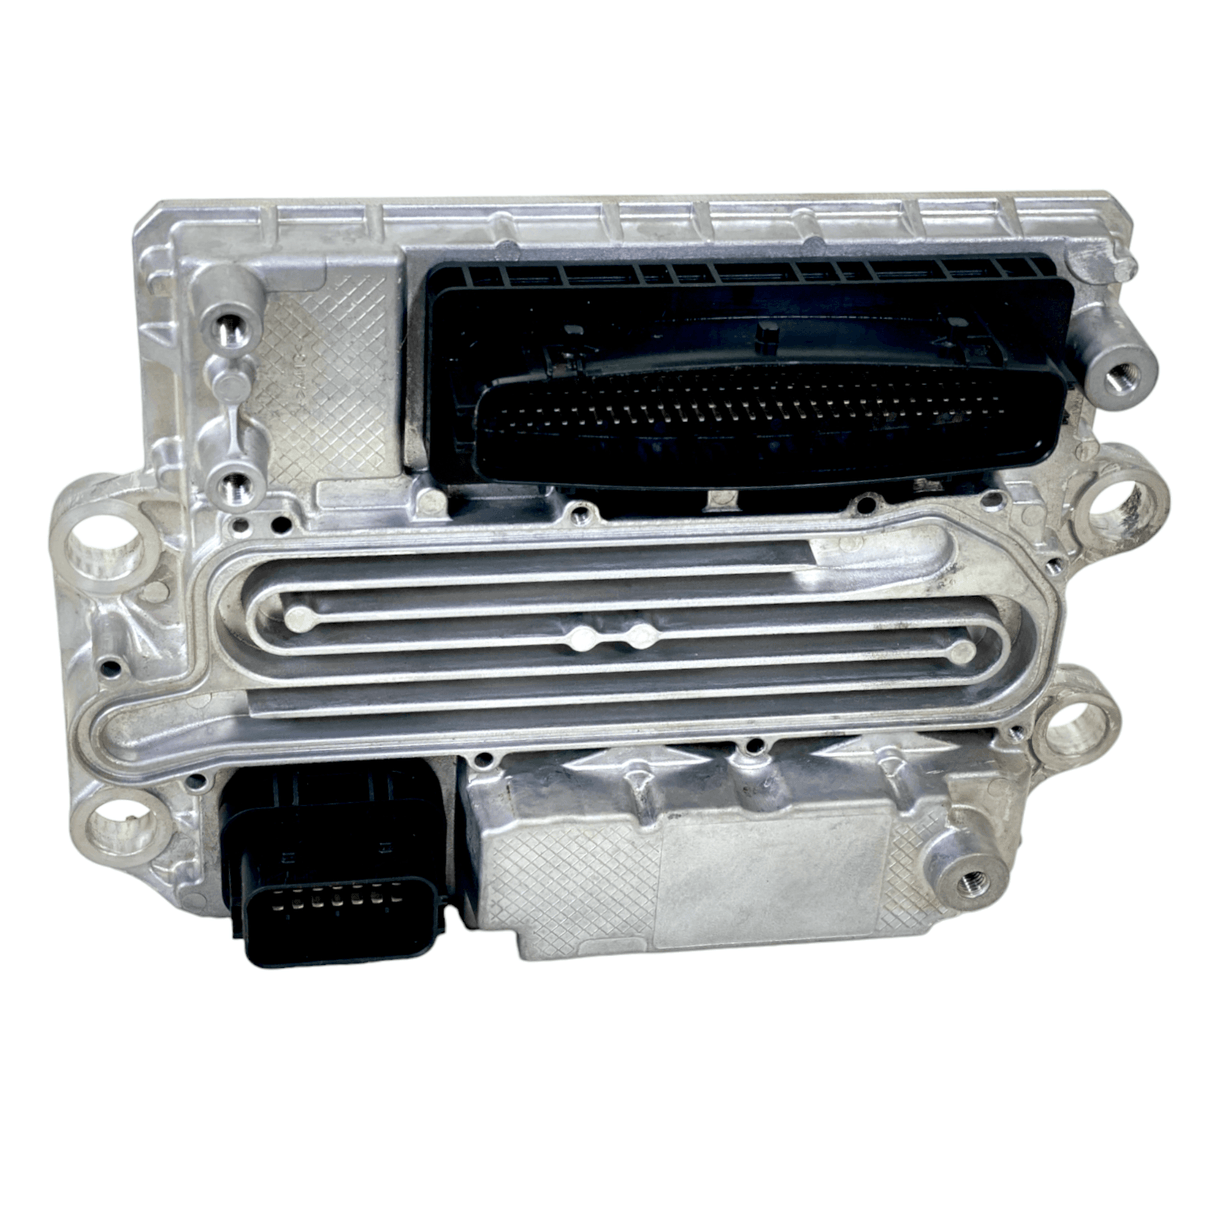 Ea0004464654 Genuine Detroit Diesel® Ecu Acm2.1 Aftertreatment Control Module Dd13 Dd15 Dd16 Ghg17 Evo.